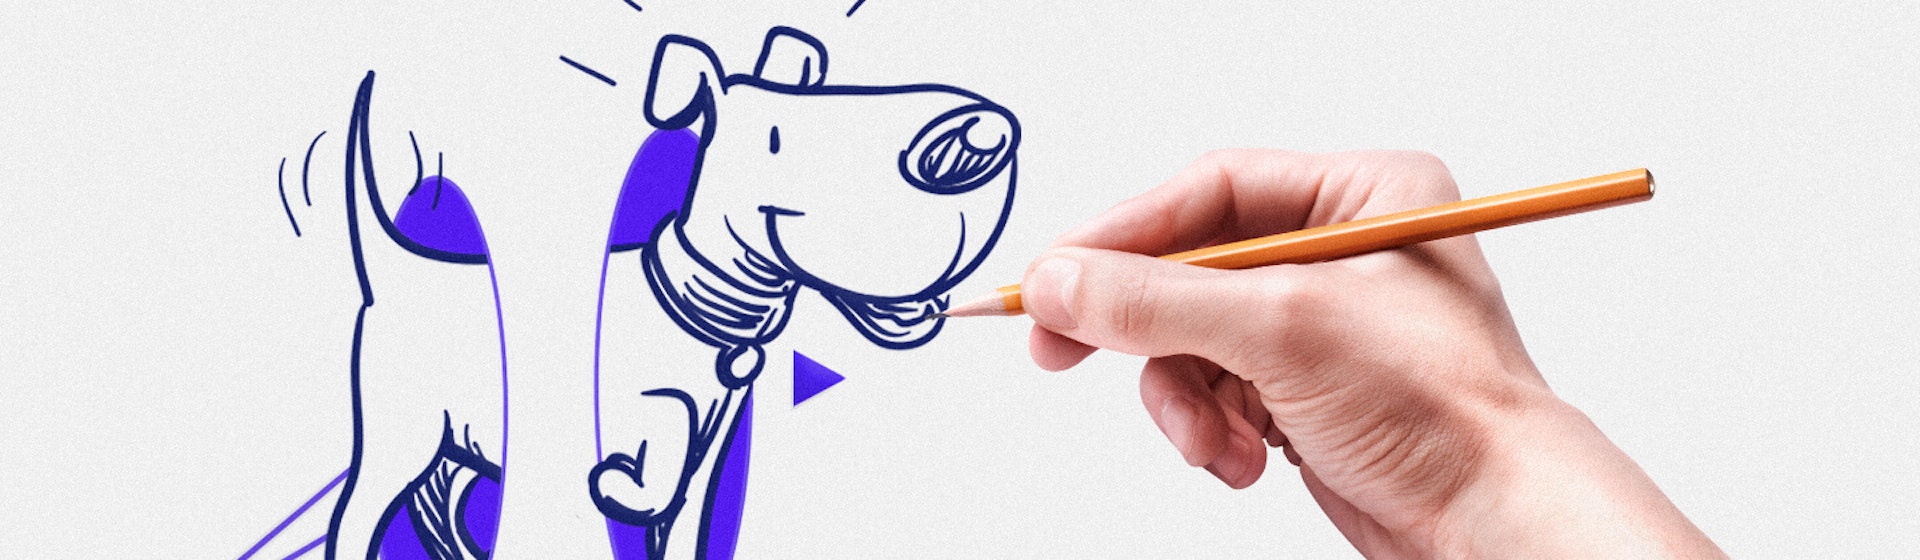 ¿Cómo dibujar un perro paso a paso? (y no perder el respeto de tu chihuahua)